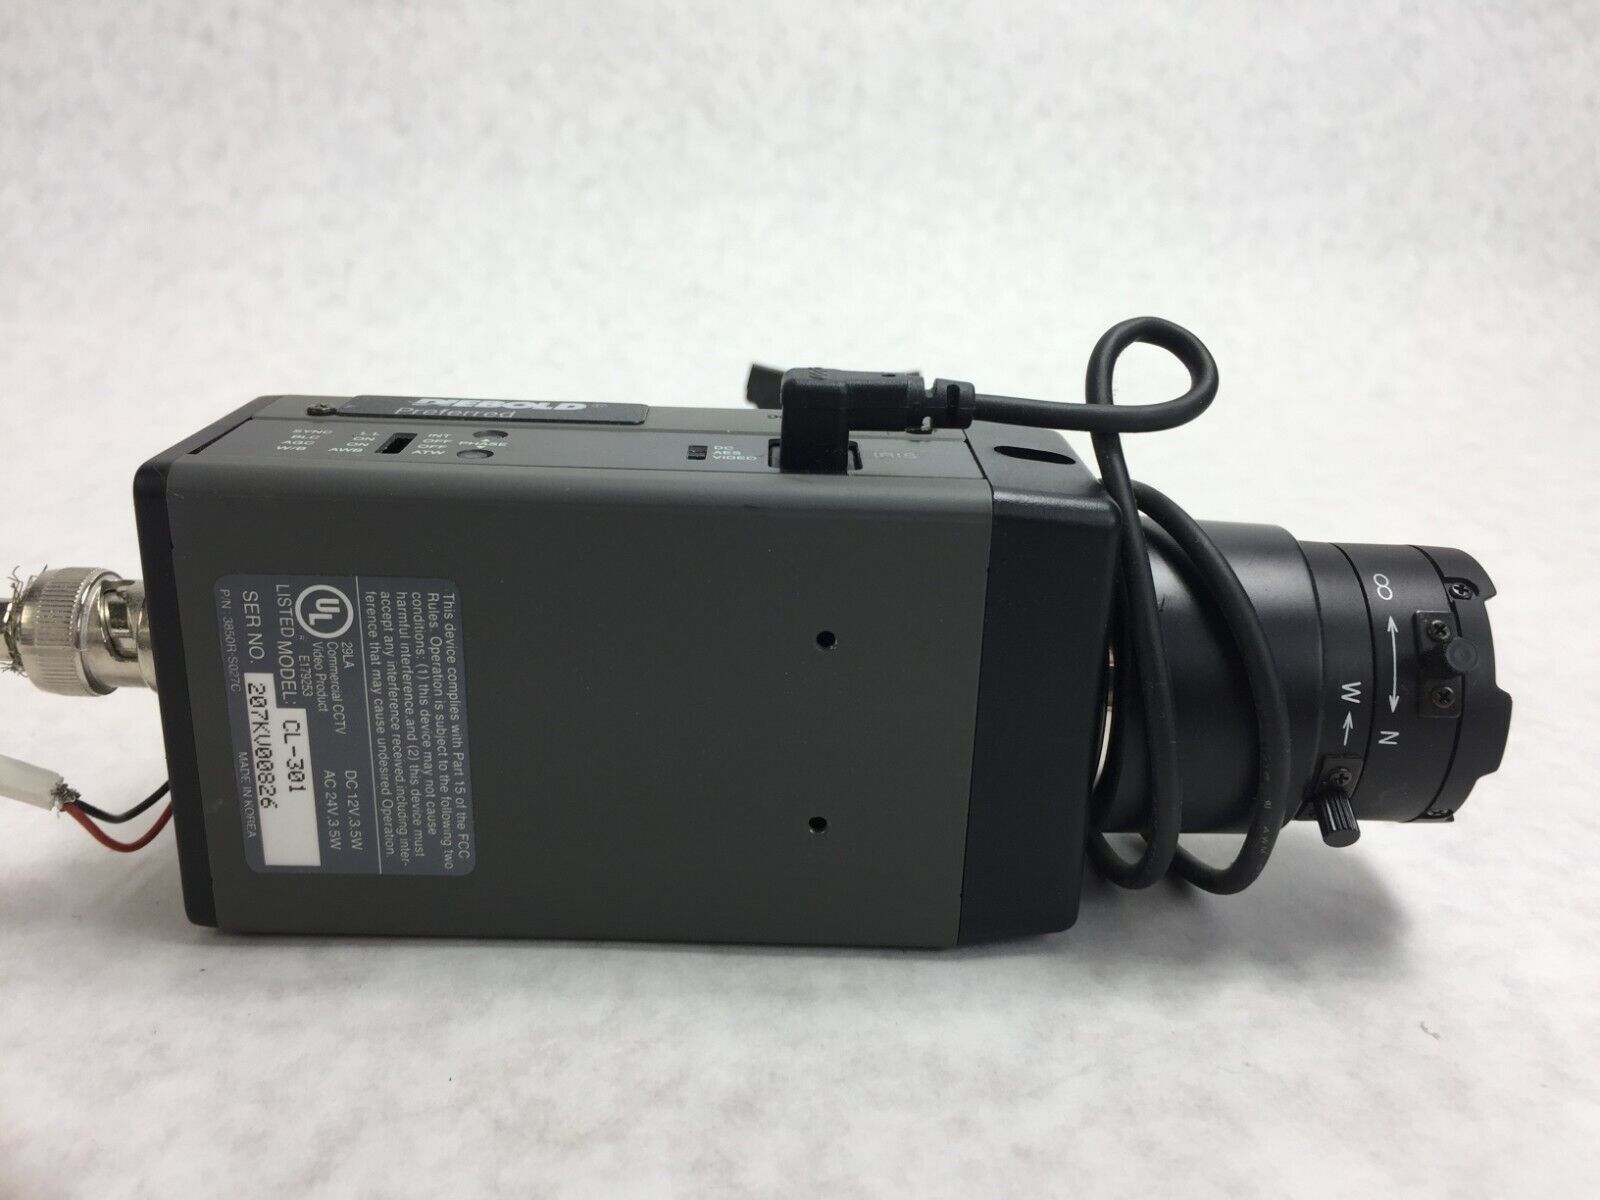 Diebold Preferred CL-301 w/ Computar 3.5-8mm 1:1.4 1/3" Digital Security Camera